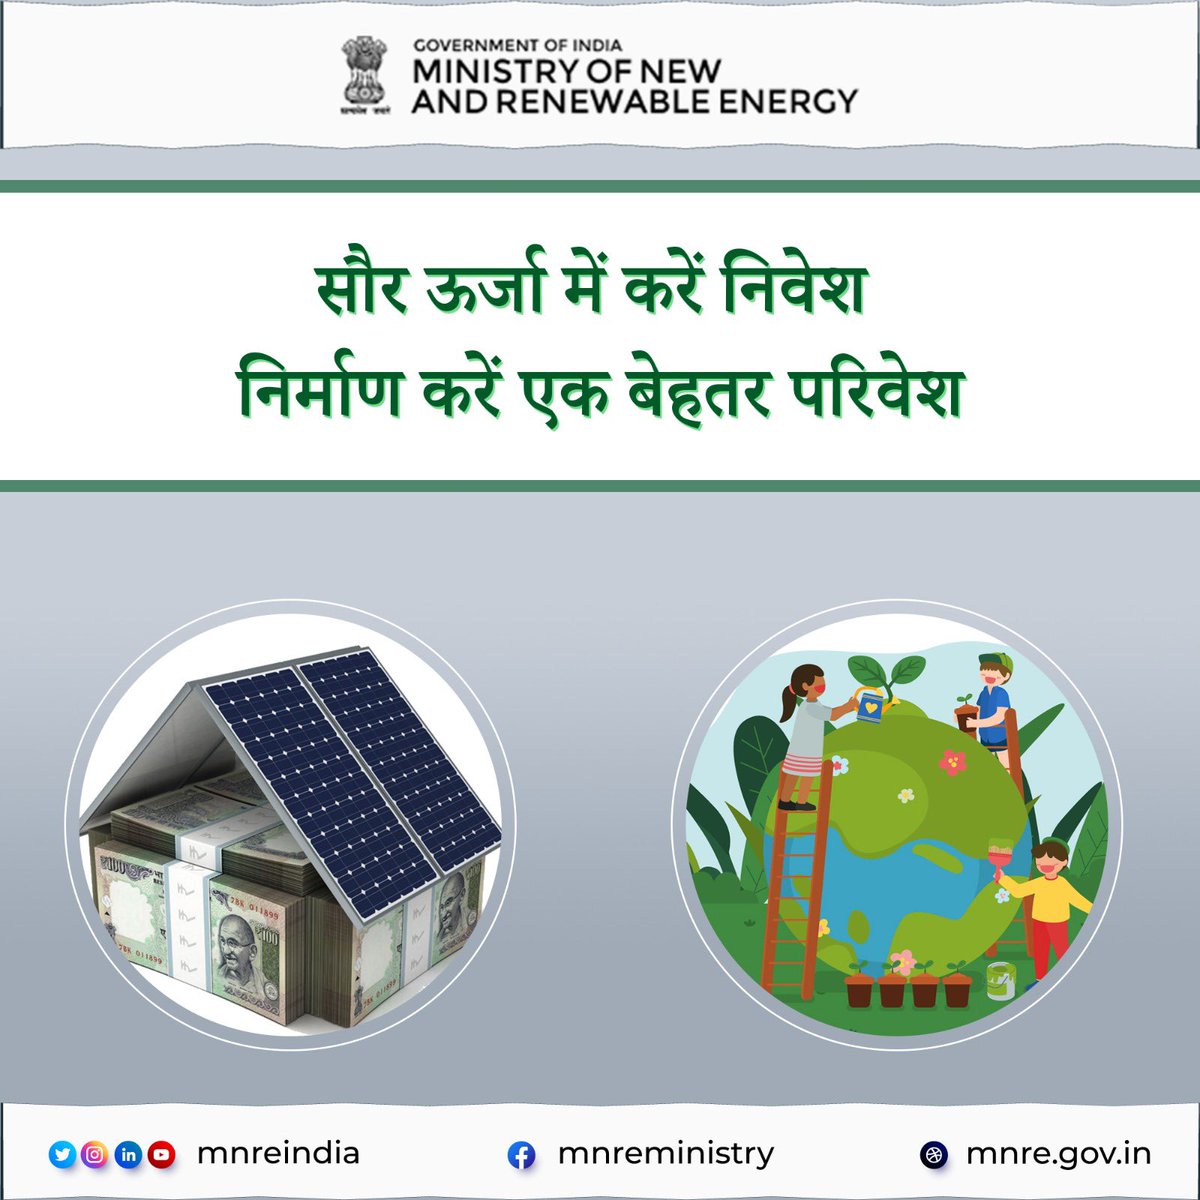 सौर ऊर्जा के उपयोग से आने वाली पीढ़ी के लिए एक सुरक्षित वातावरण का निर्माण करें। अधिक जानकारी के लिए लिंक पर क्लिक करें pmsuryaghar.gov.in #PMSuryaGhar #MNREINDIA